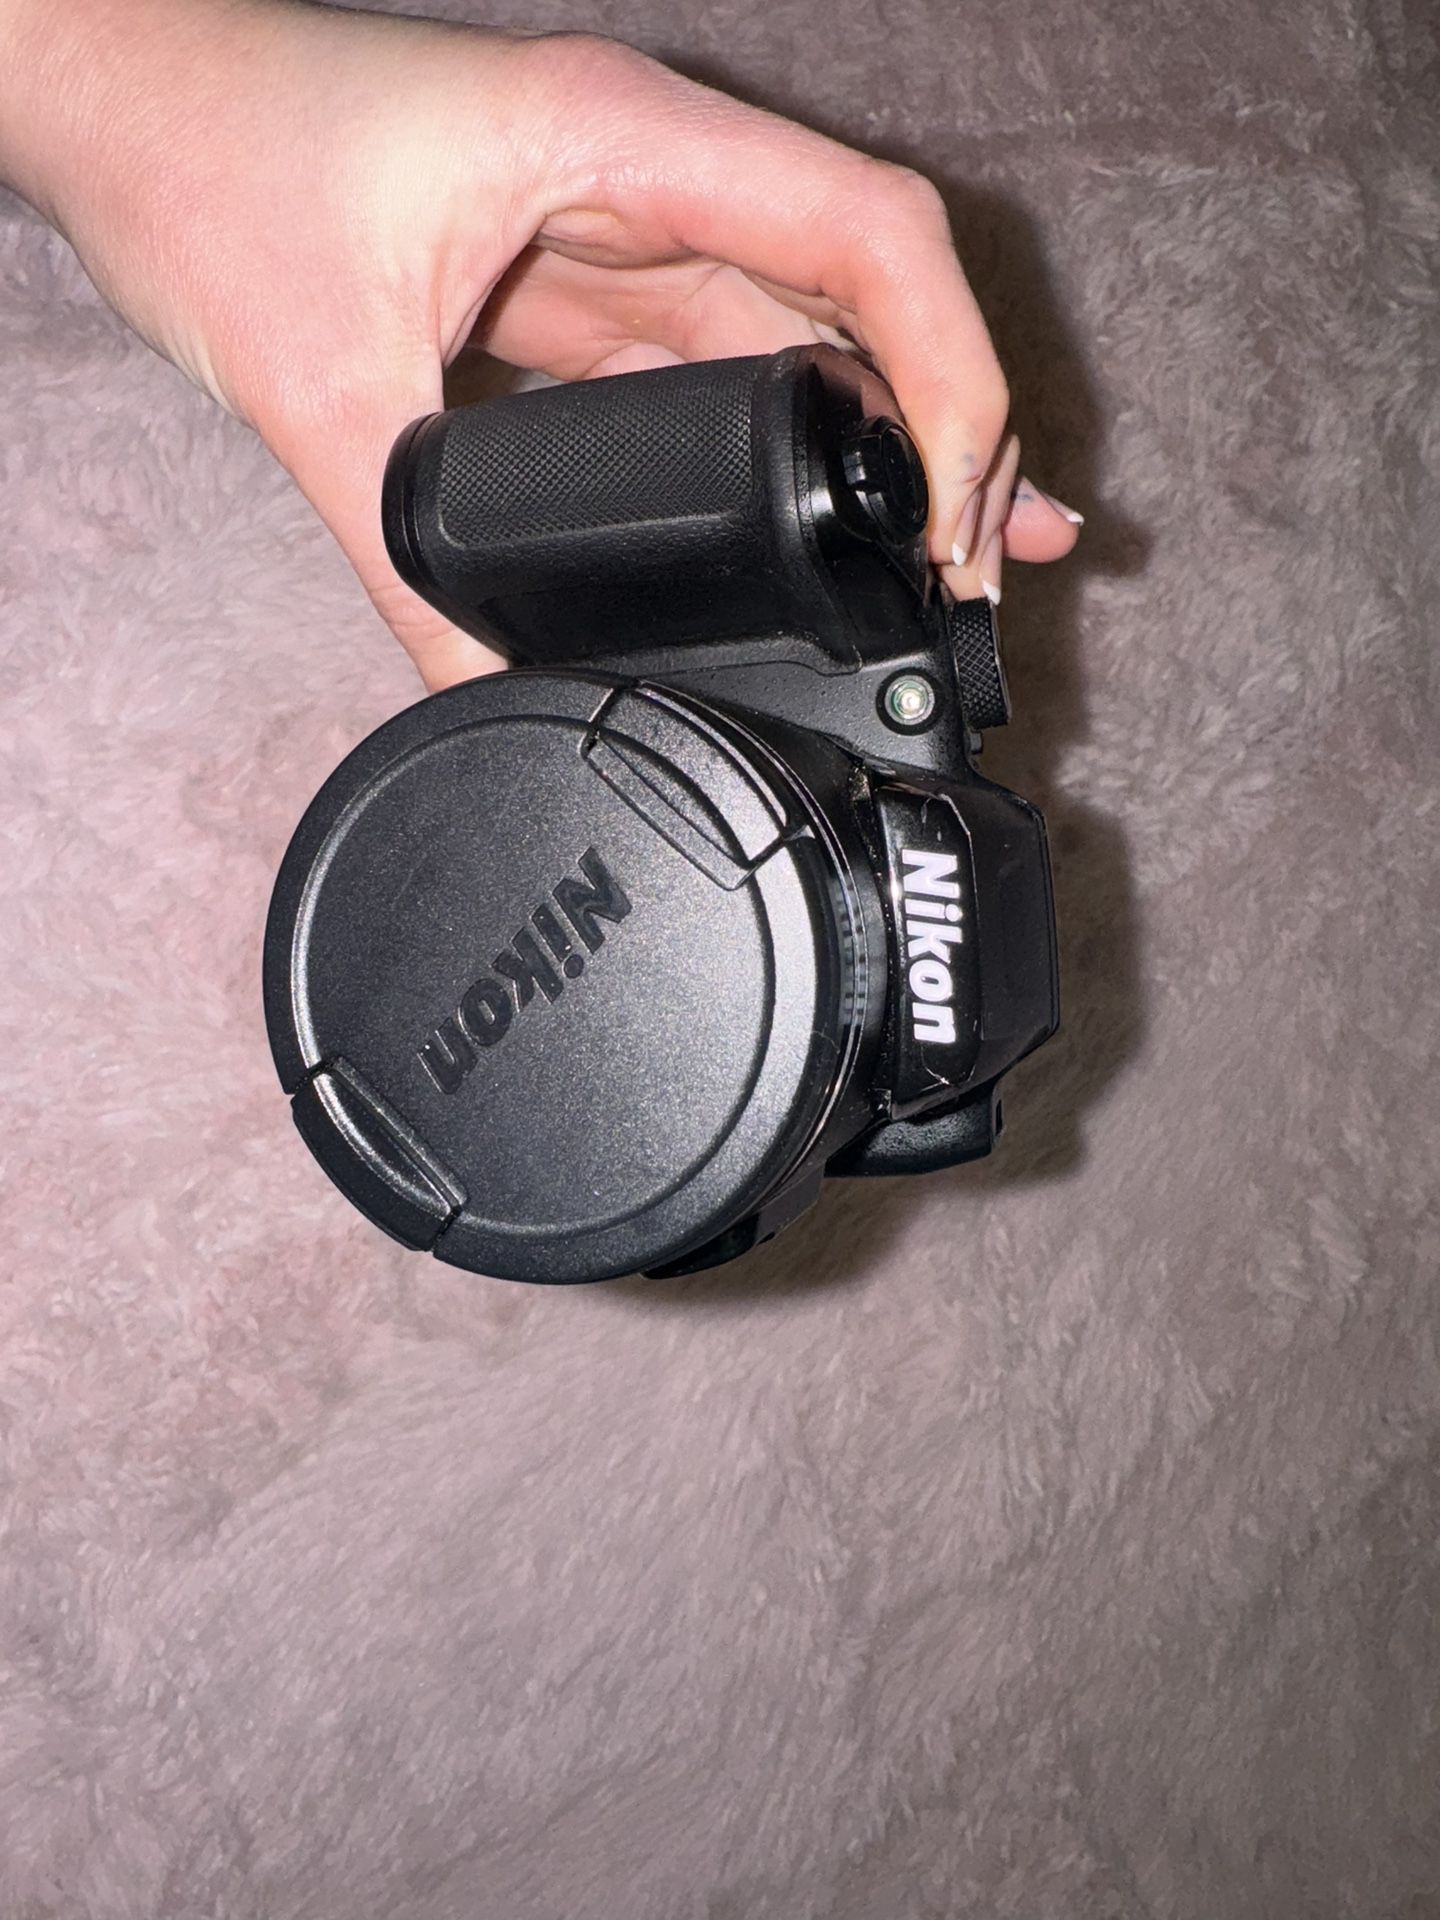 Nikon B500 Coolpix ‘smart’ camera